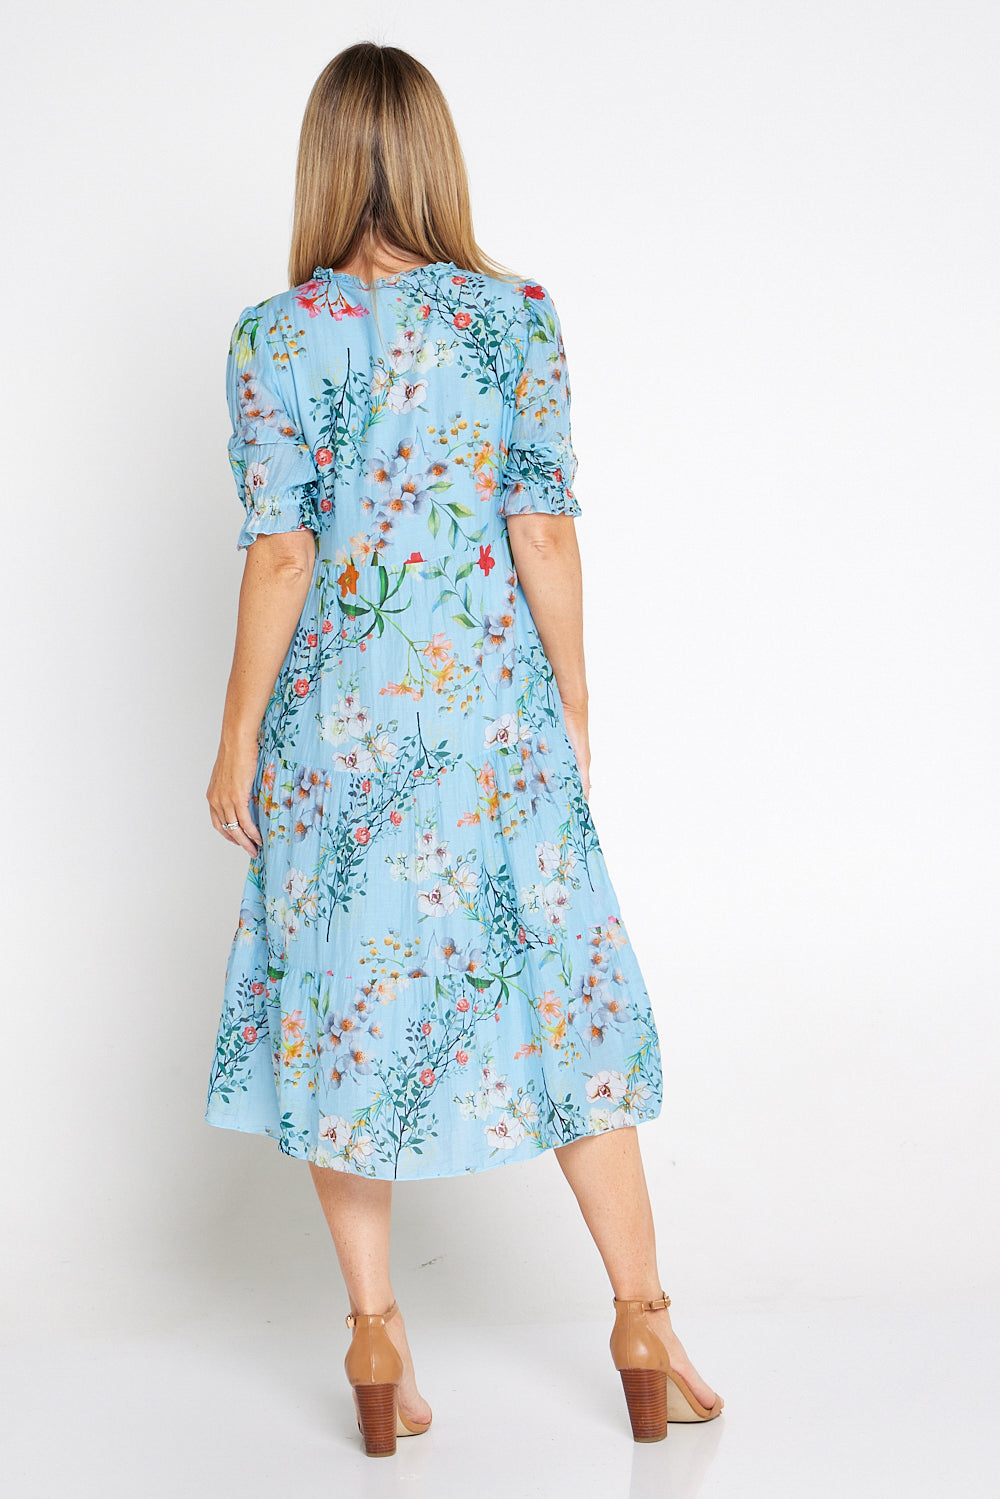 Norah Cotton Dress - Celeste Floral